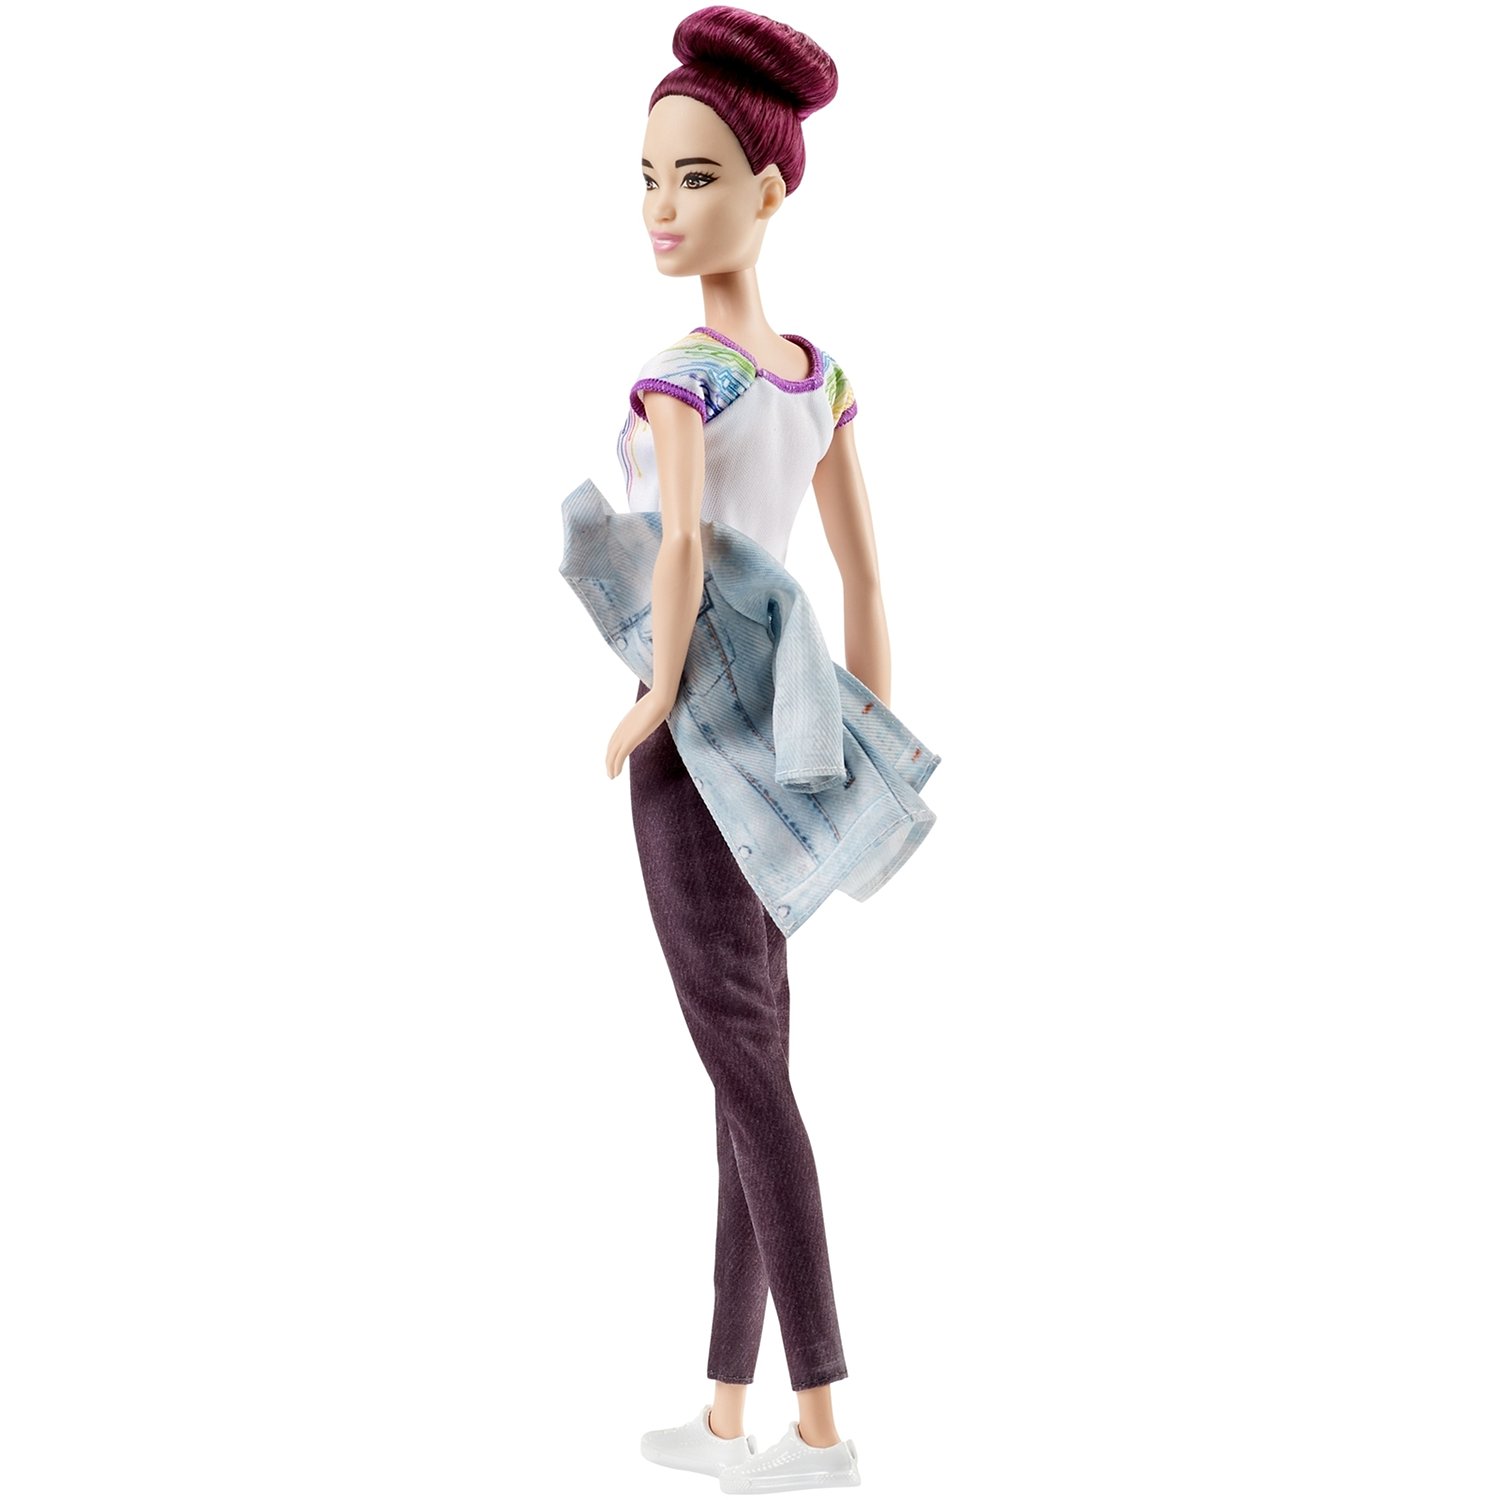 Кукла Barbie Инженер-робототехник с бордовой прической, 32 см, FRM12